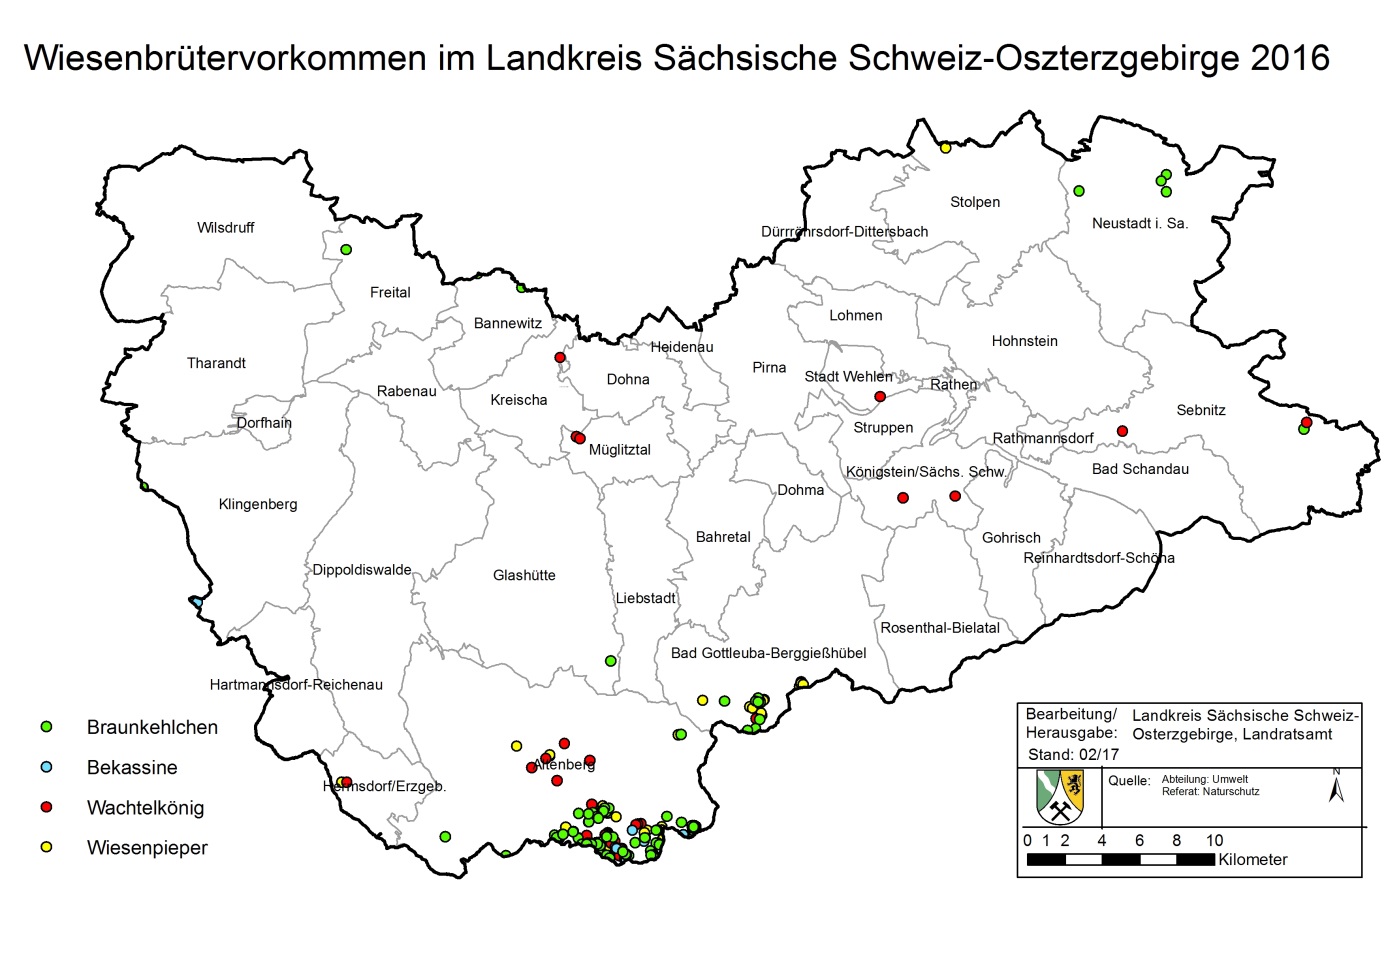 Wiesenbrütervorkommen im Landkreis Sächsische Schweiz-Osterzgebirge 2016